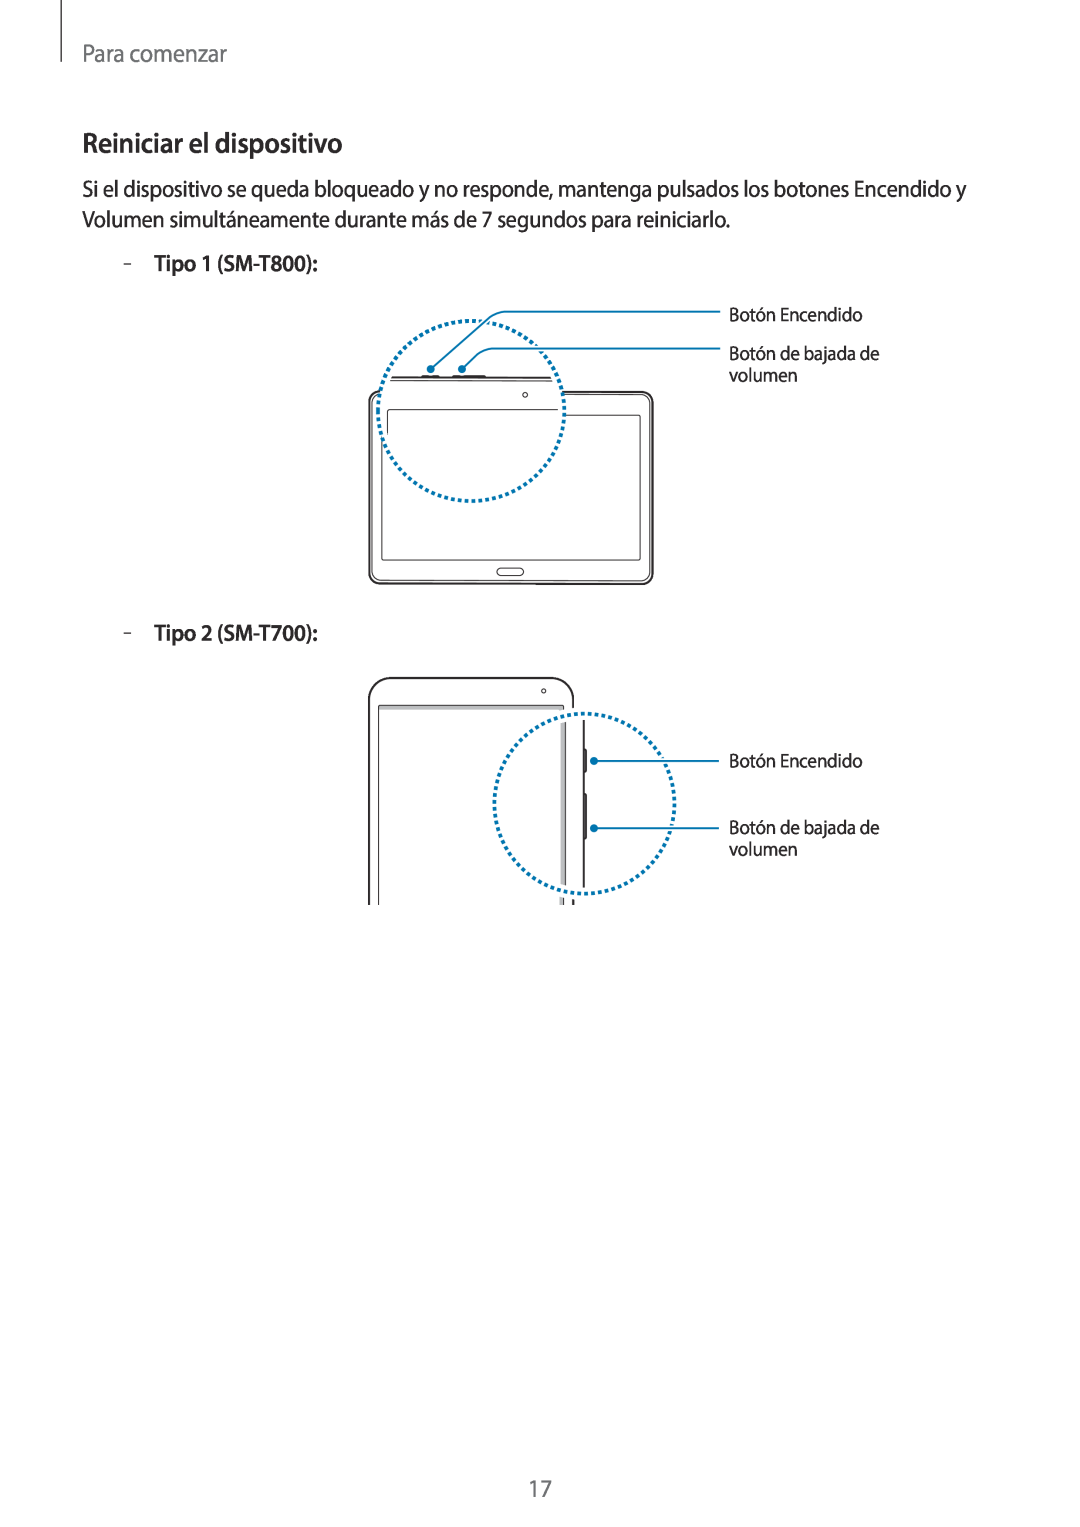 Samsung SM-T800NZWAPHE, SM-T800NHAAATO manual Reiniciar el dispositivo, Para comenzar, Tipo 1 SM-T800, Tipo 2 SM-T700 